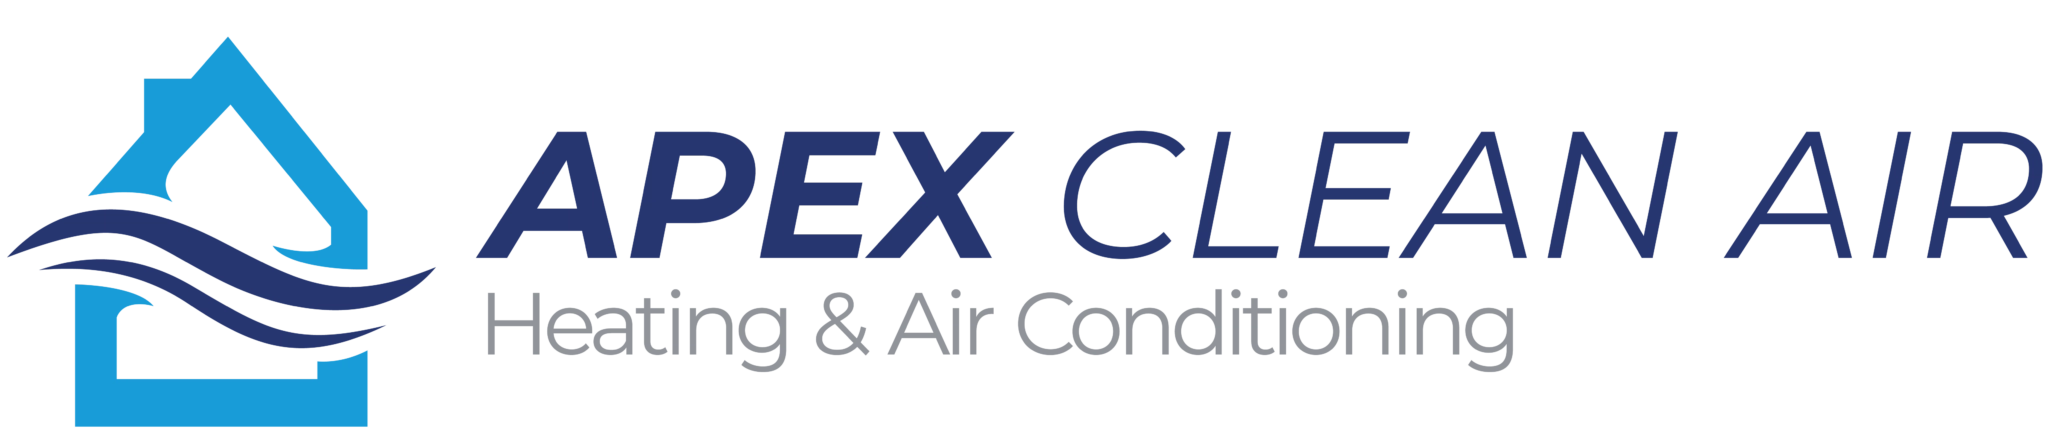 Apex Clean Air Logo